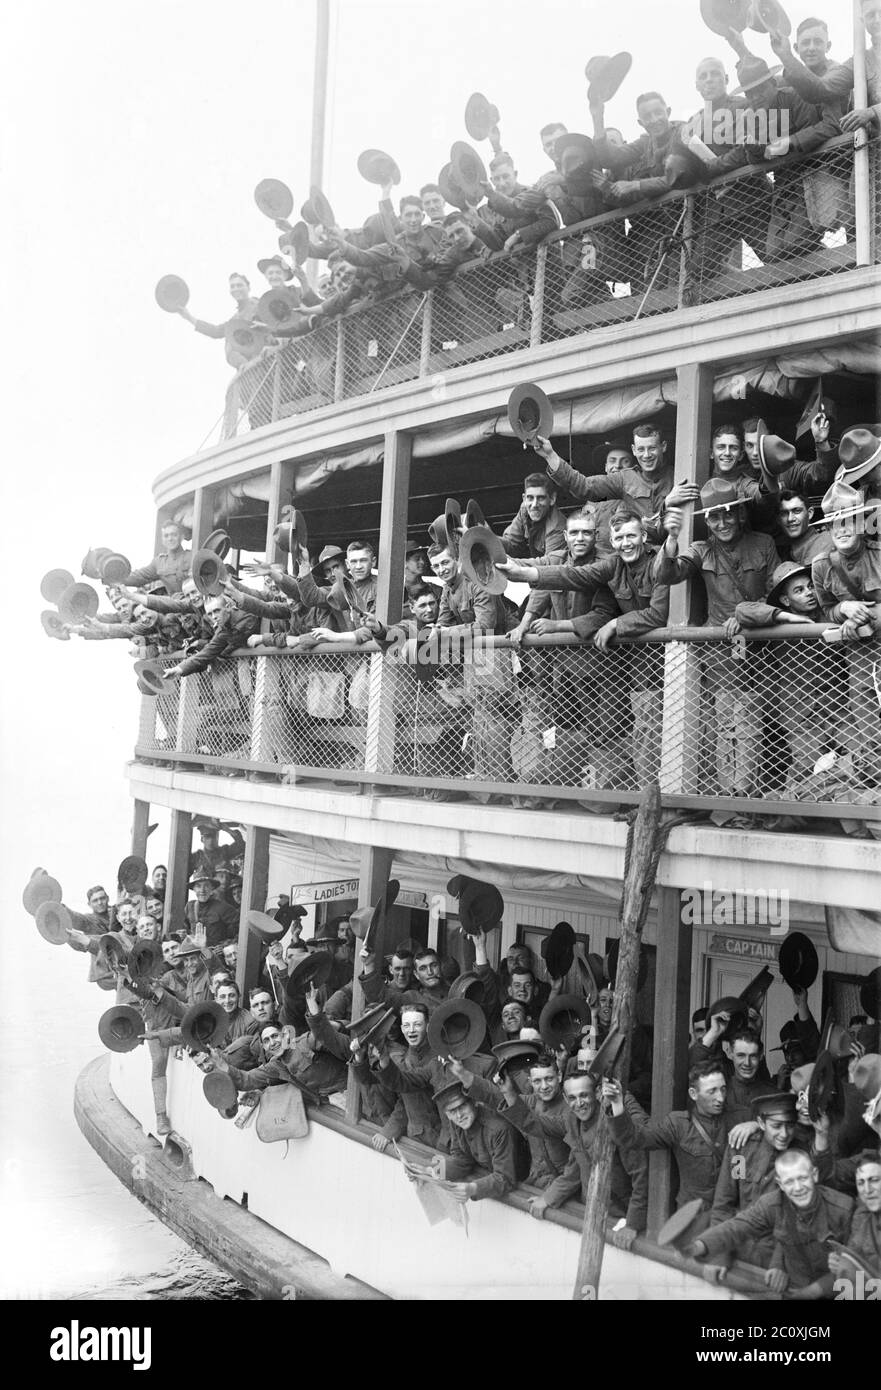 Soldati americani in barca lasciando Fort Slocum, un posto militare che serviva come principale stazione di reclutamento durante la prima guerra mondiale, Davids' Island, New Rochelle, New York, USA, Bain News Service, 1917 Foto Stock